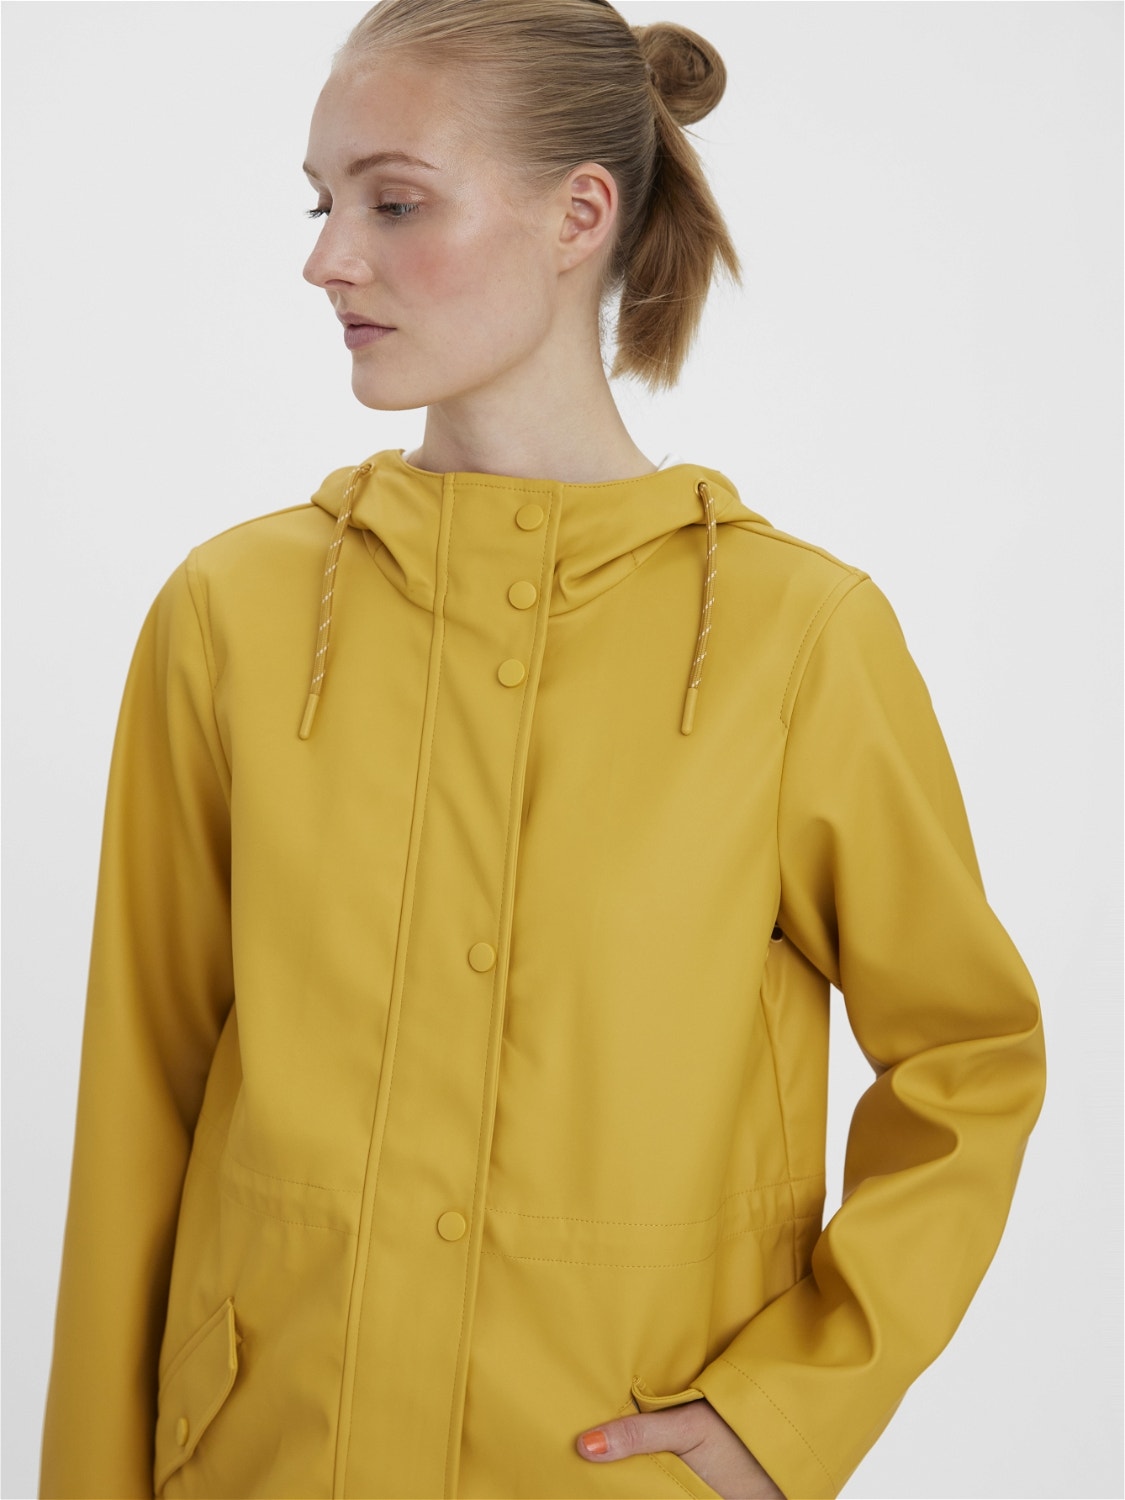 Vero Moda VMMALOU Jacket -Amber Gold - 10266982